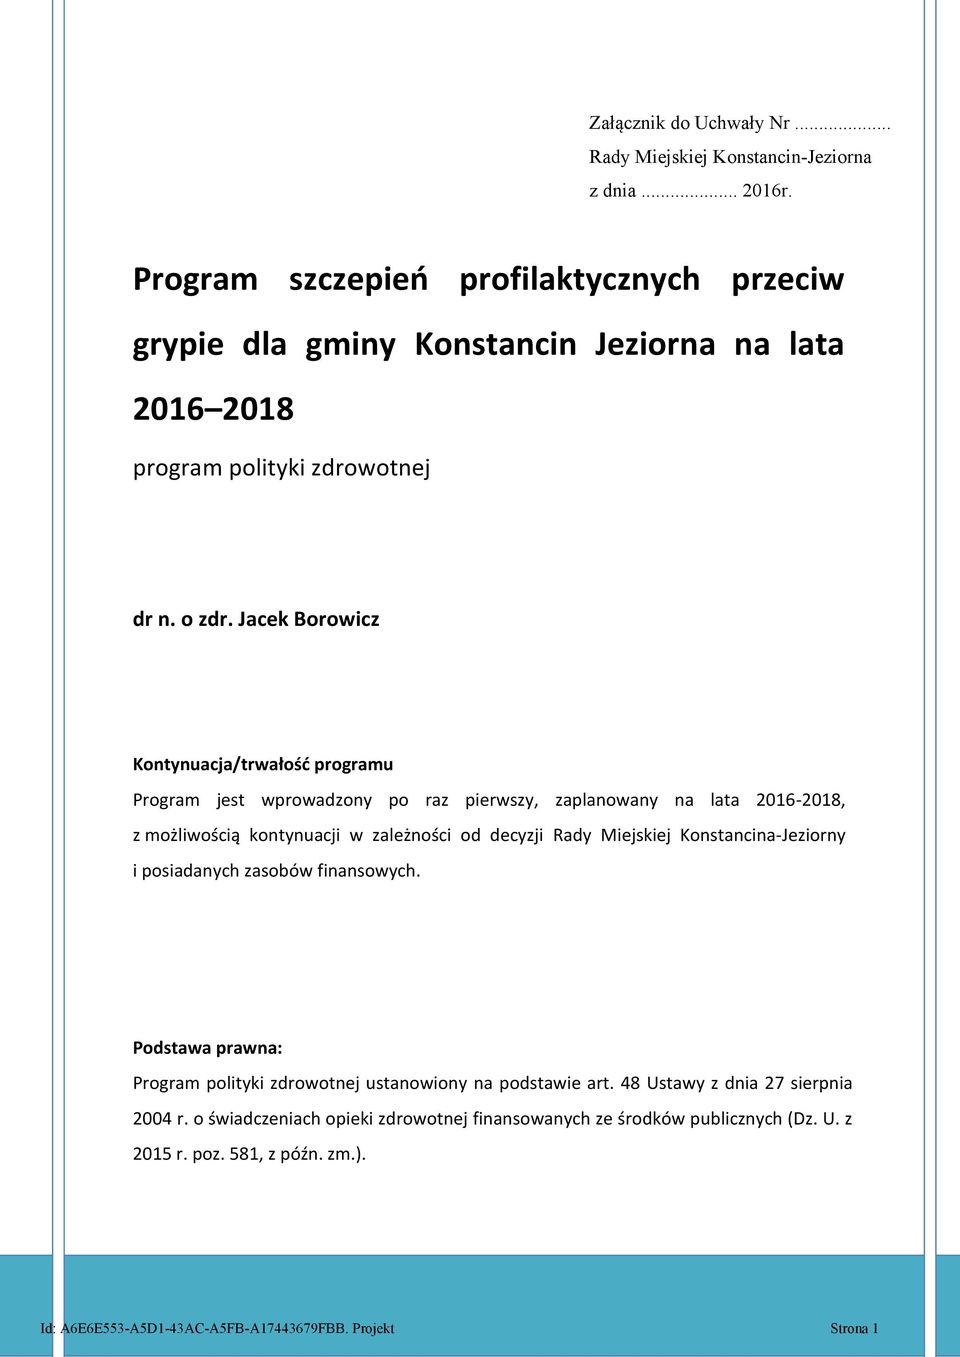 Jacek Borowicz Kontynuacja/trwałość programu Program jest wprowadzony po raz pierwszy, zaplanowany na lata 2016-2018, z możliwością kontynuacji w zależności od decyzji Rady Miejskiej